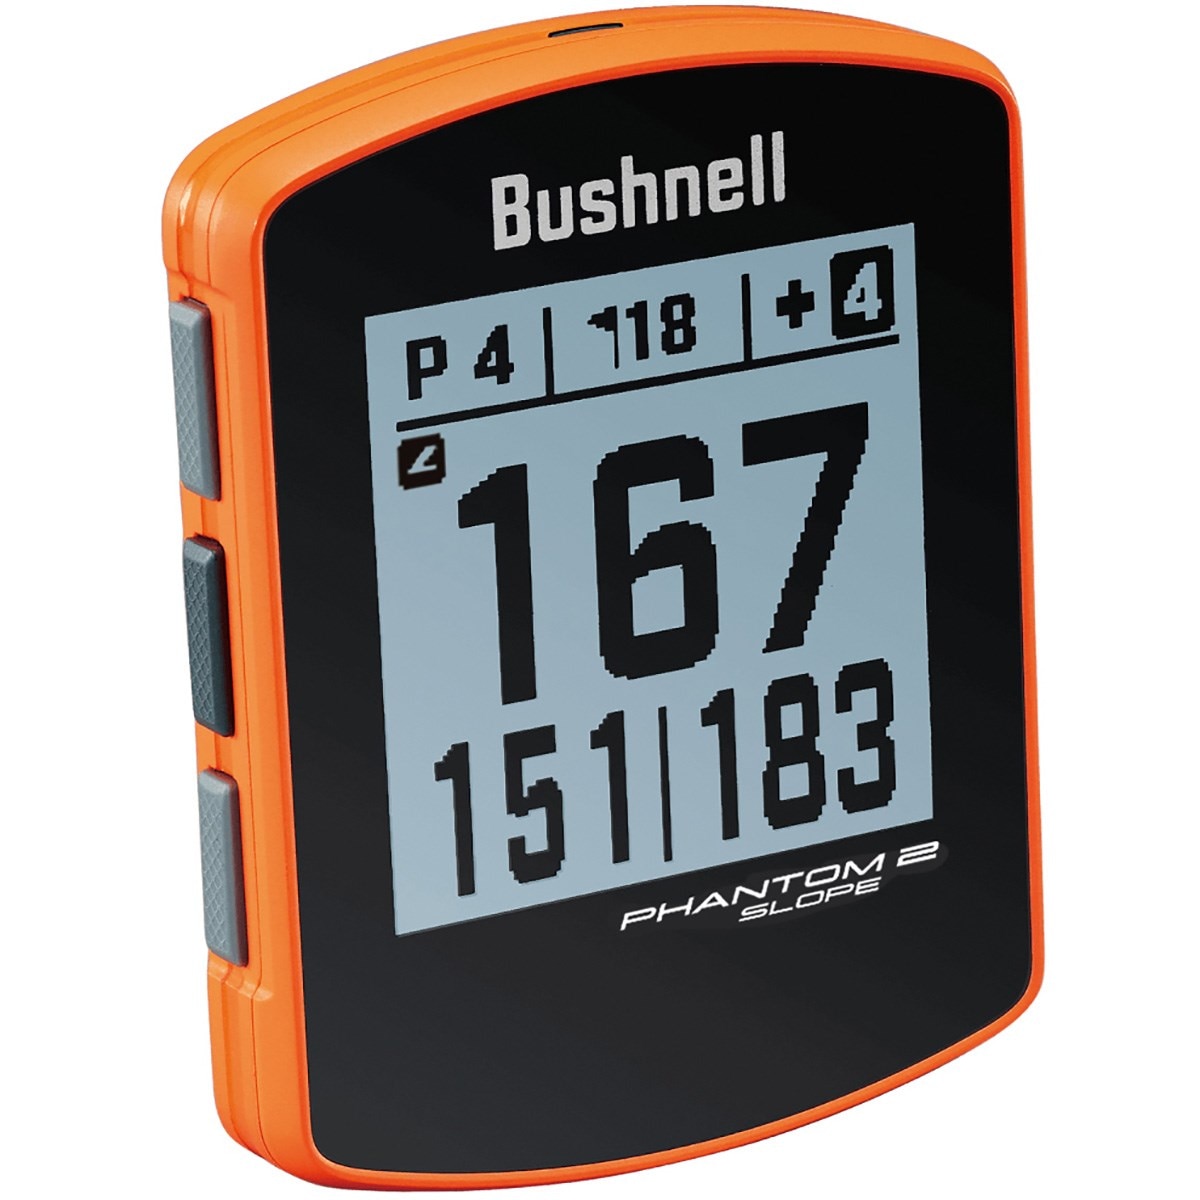 ファントム2 スロープ(距離測定器)|Bushnell(ブッシュネル)の通販 ...